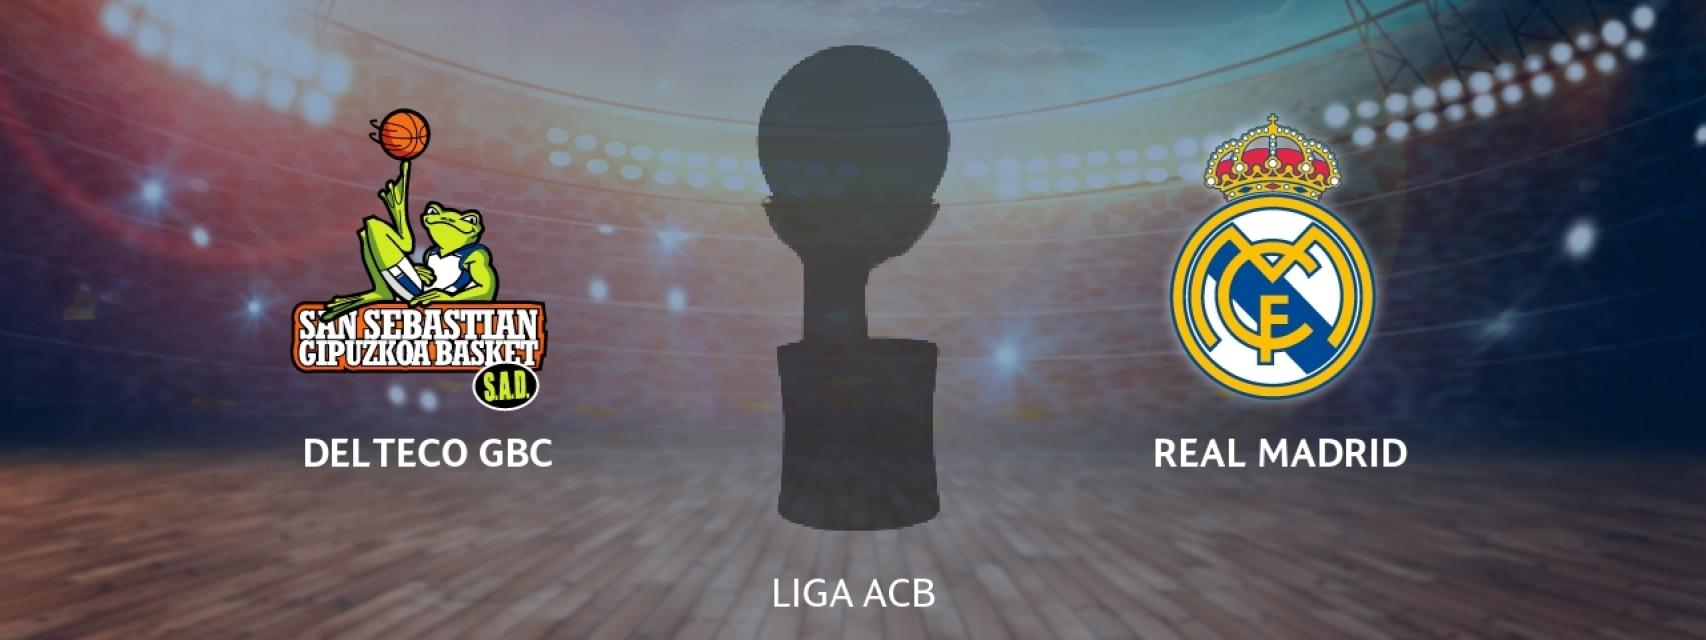 Delteco GBC - Real Madrid: siga en directo el partido de la ACB